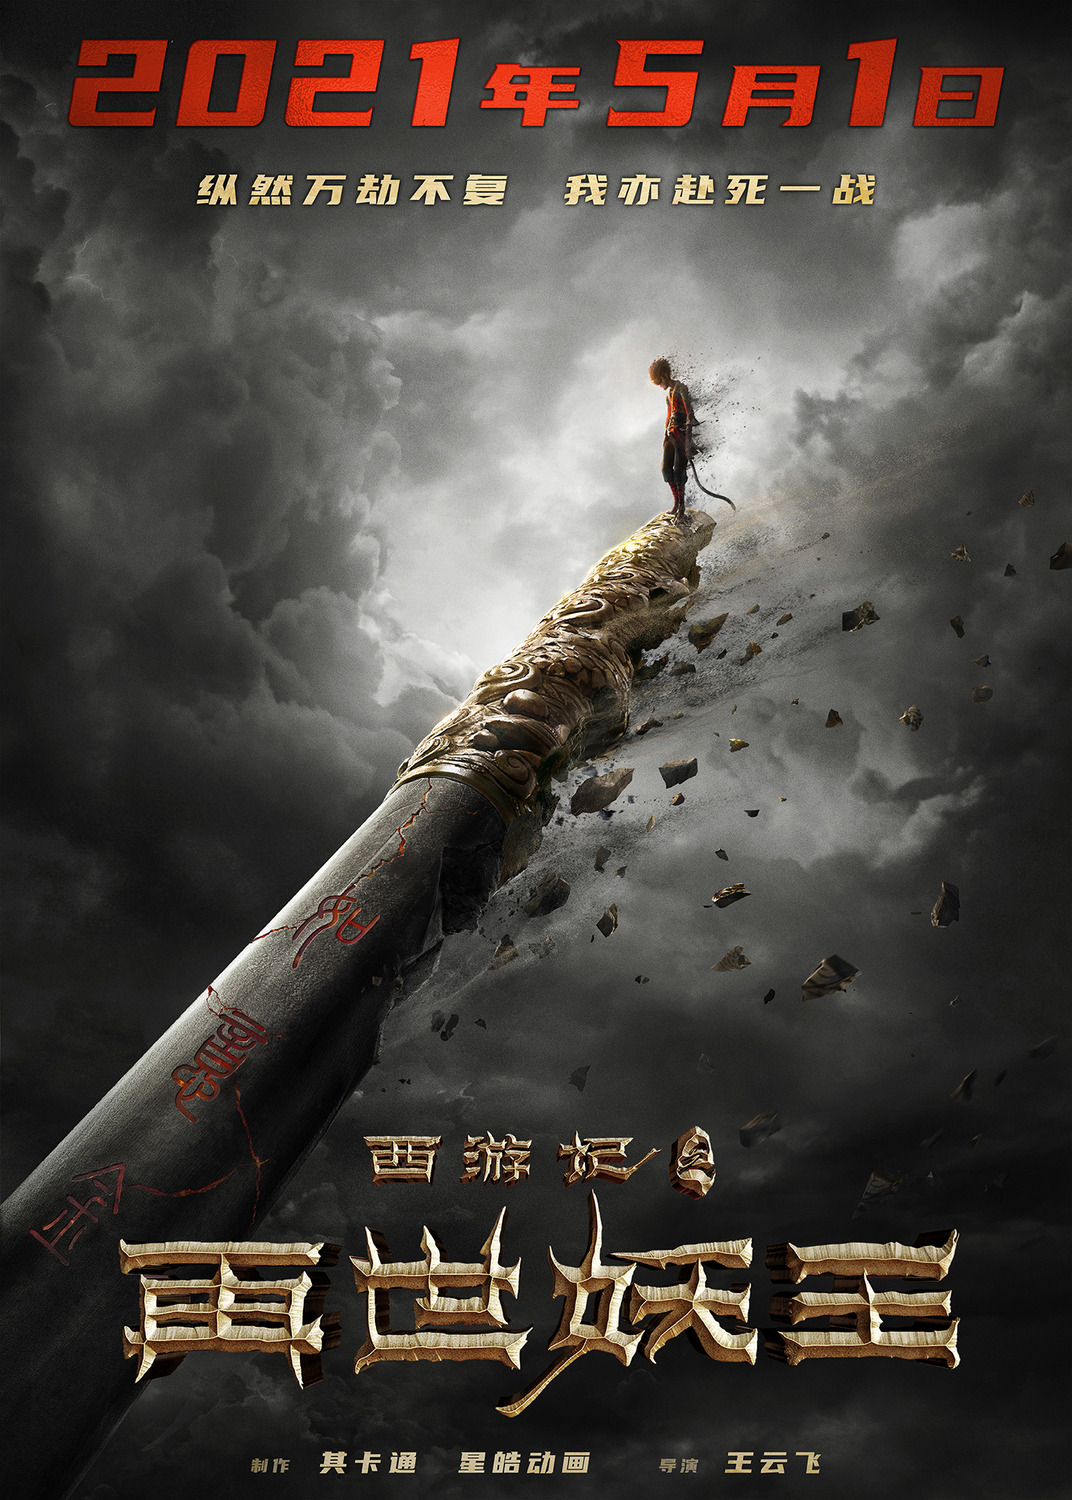 Extra Large Movie Poster Image for Xi You Ji Zhi Zai Shi Yao Wang (#1 of 21)